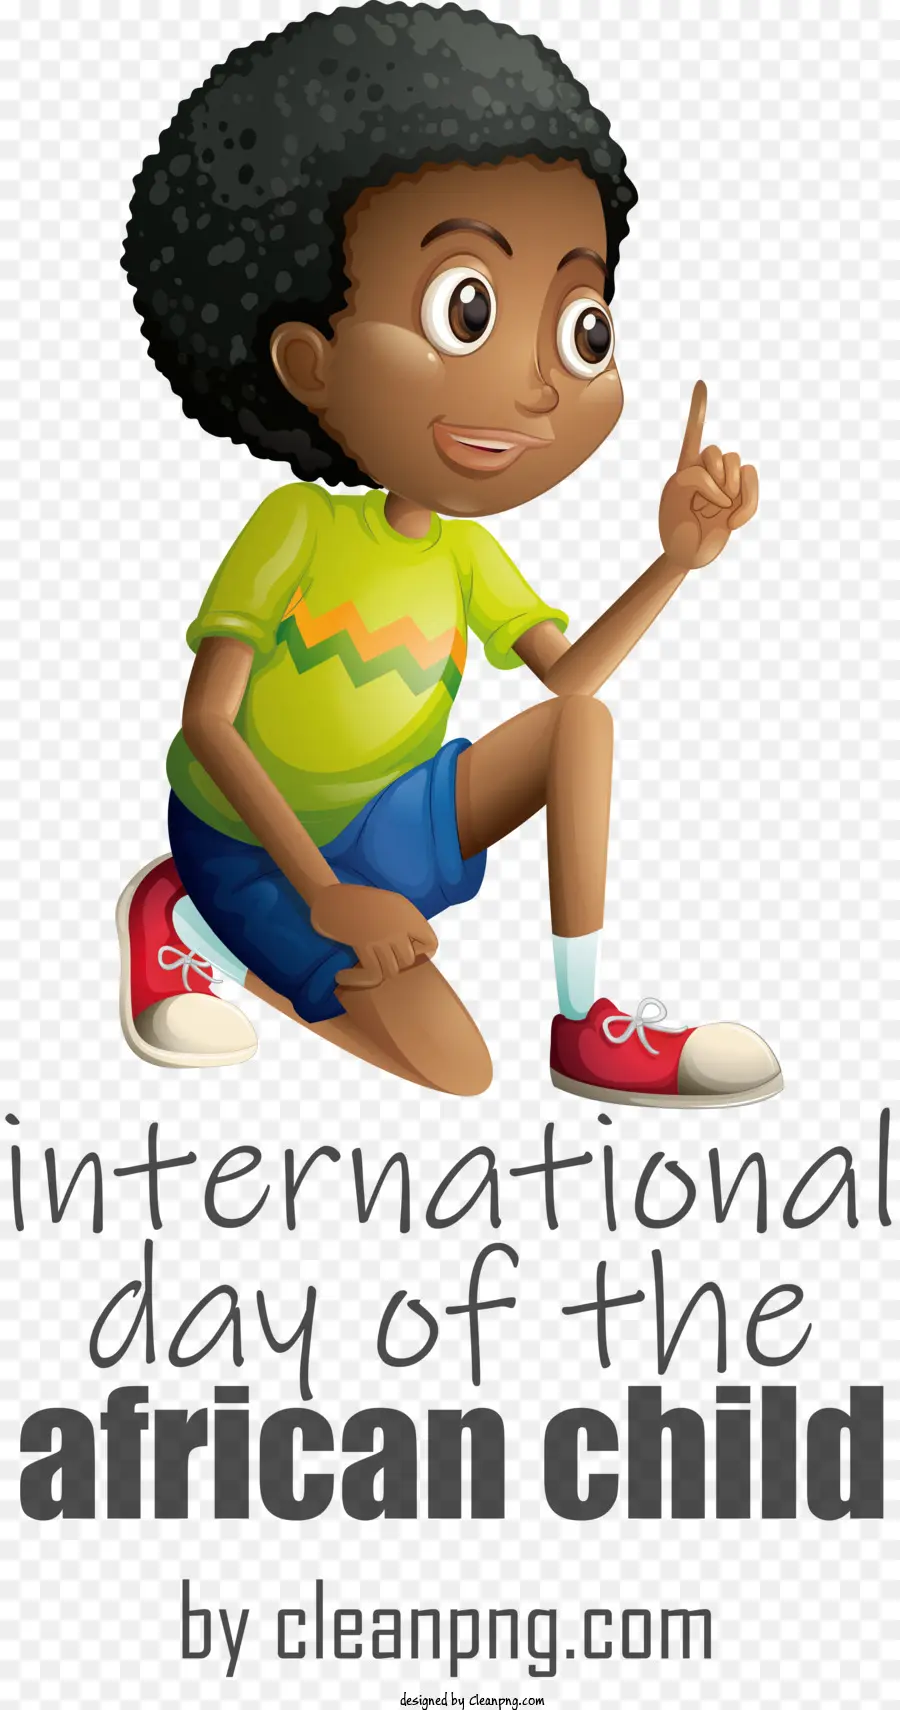 Internationaler Tag des afrikanischen Kindertages des afrikanischen Kindes - 